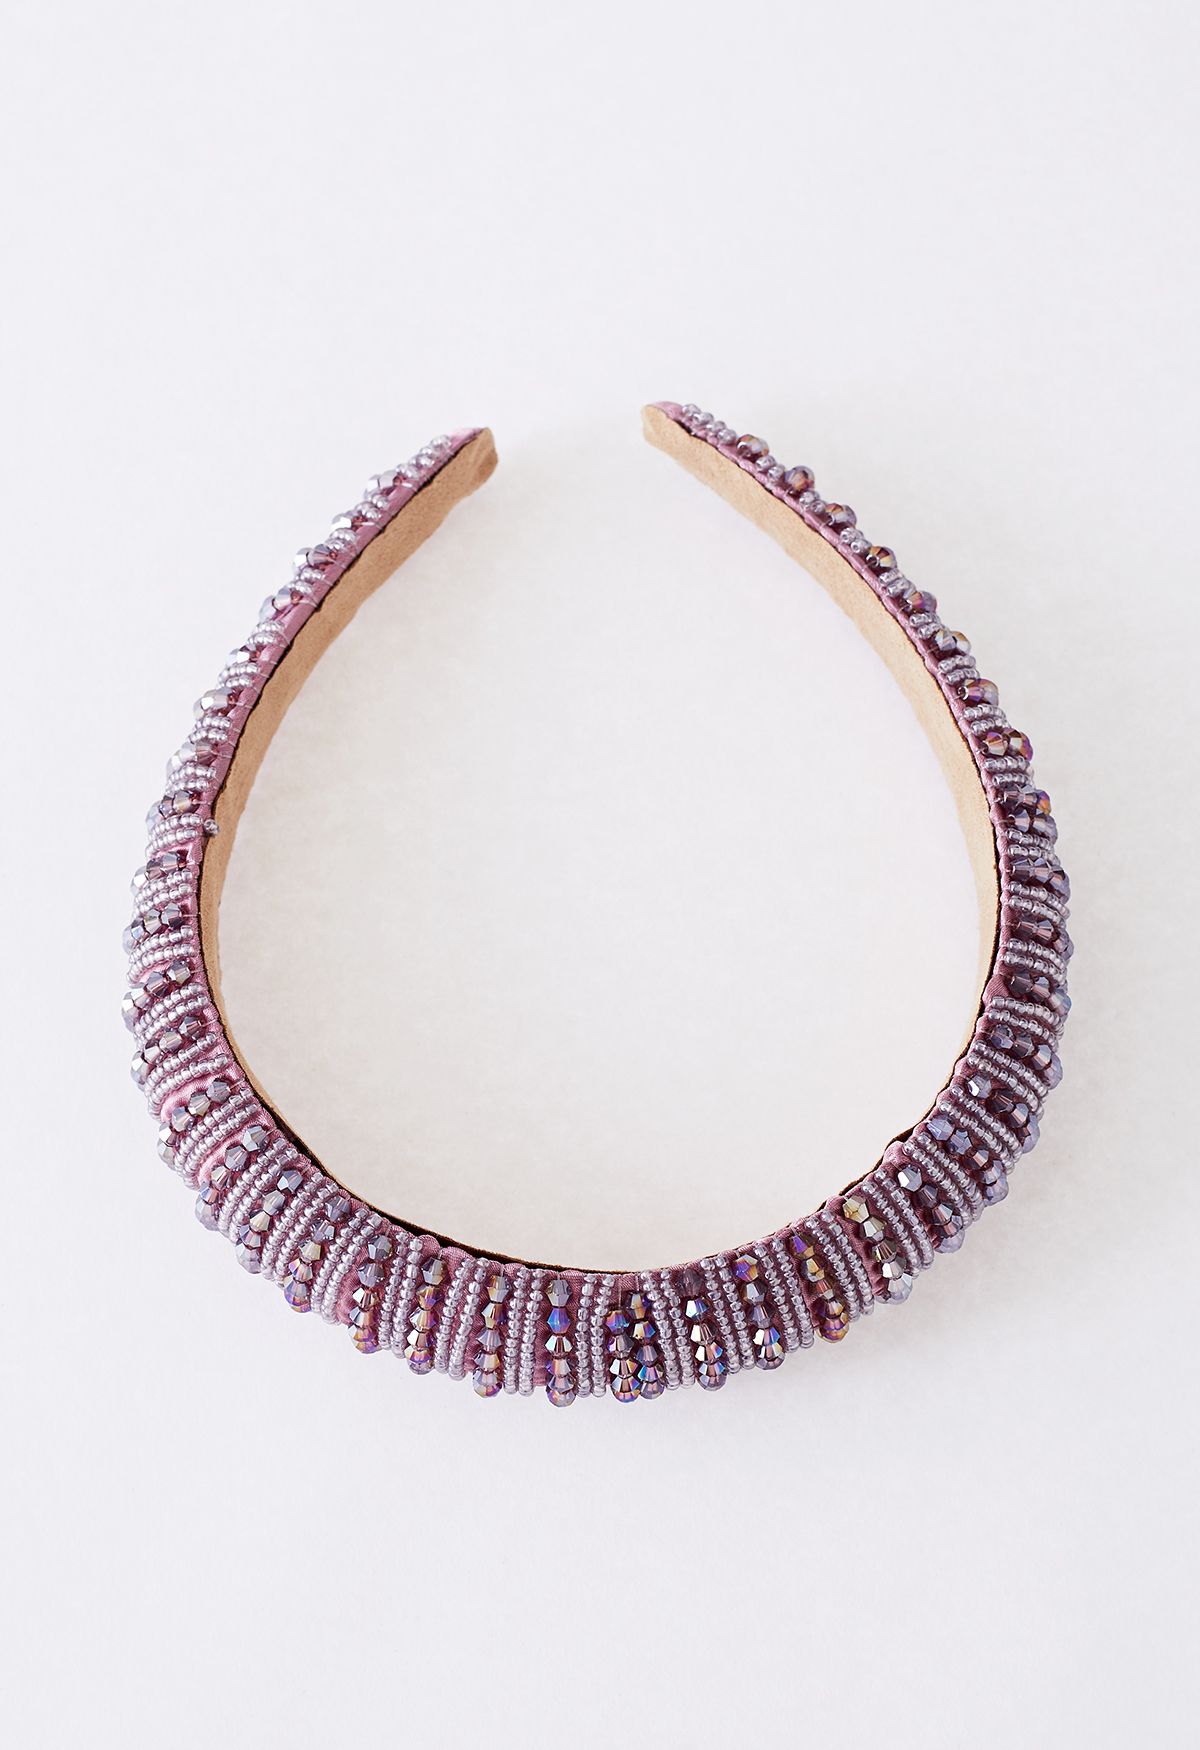 Full Rhinestone Crystal Headband in Lilac